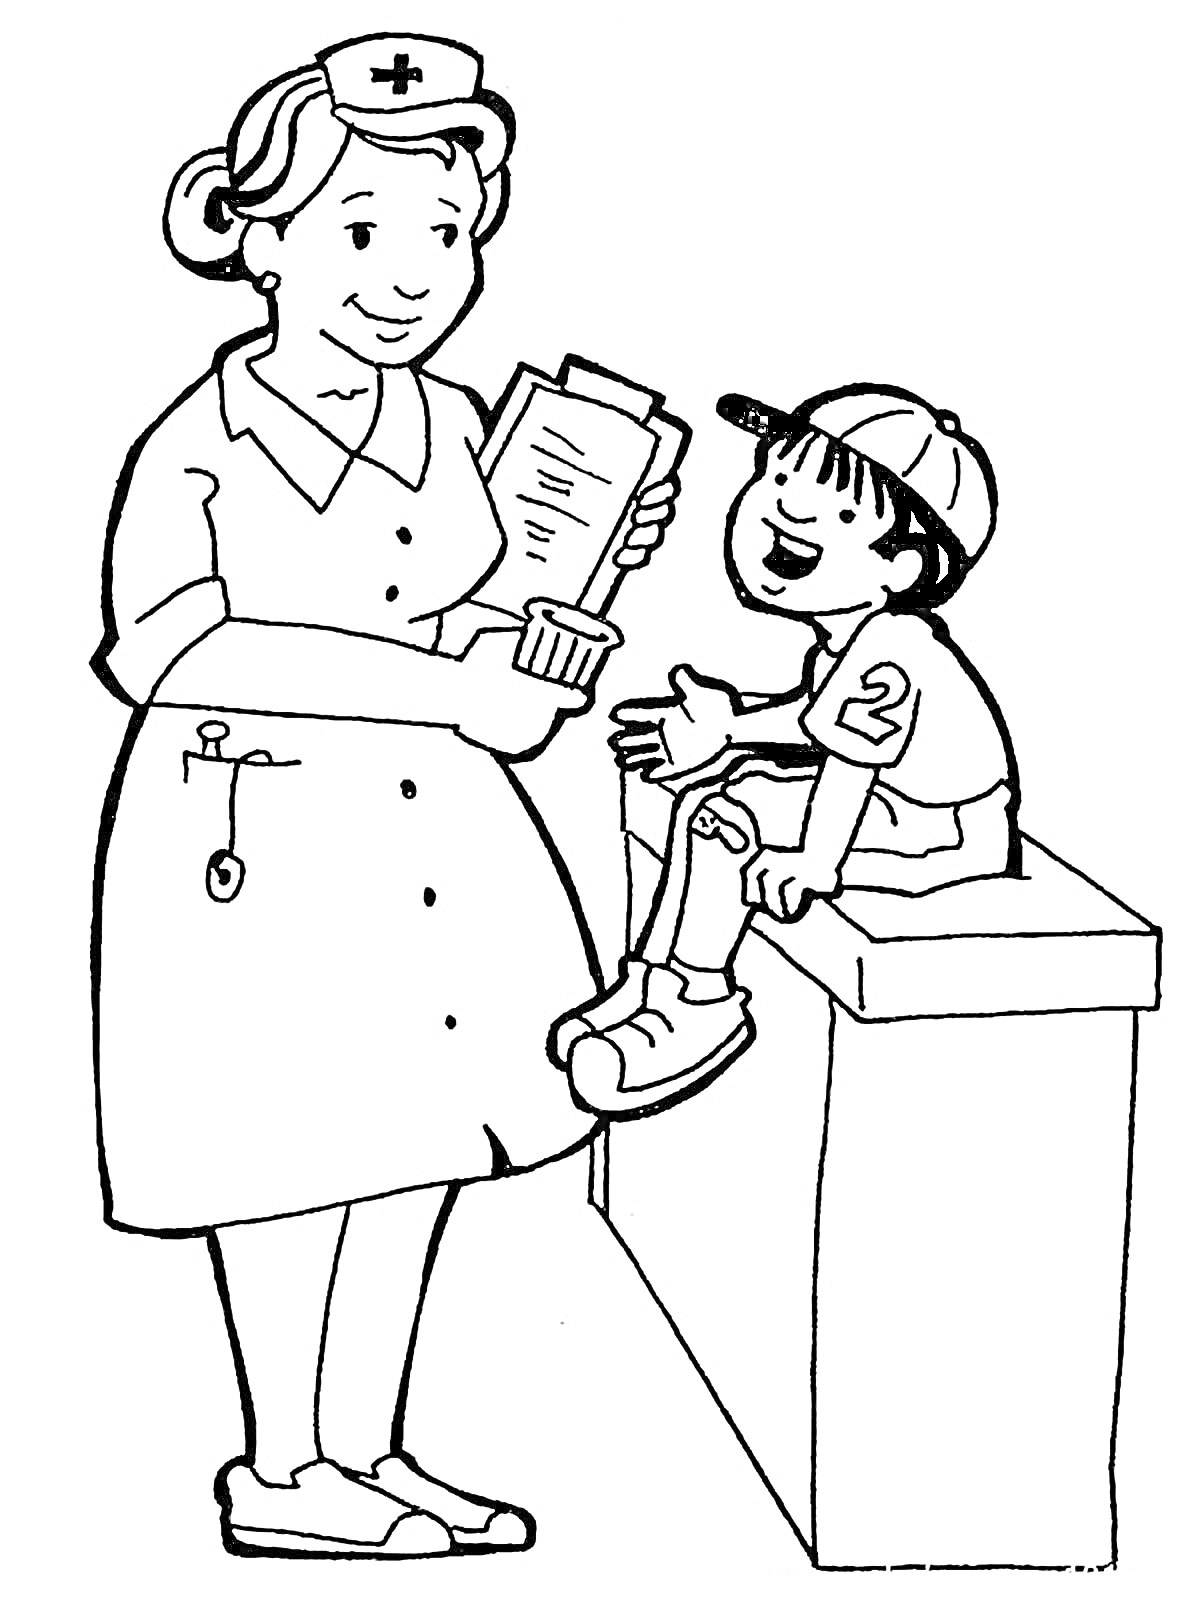 Медсестра с бумагами и ребёнок в бейсболке с перебинтованной ногой